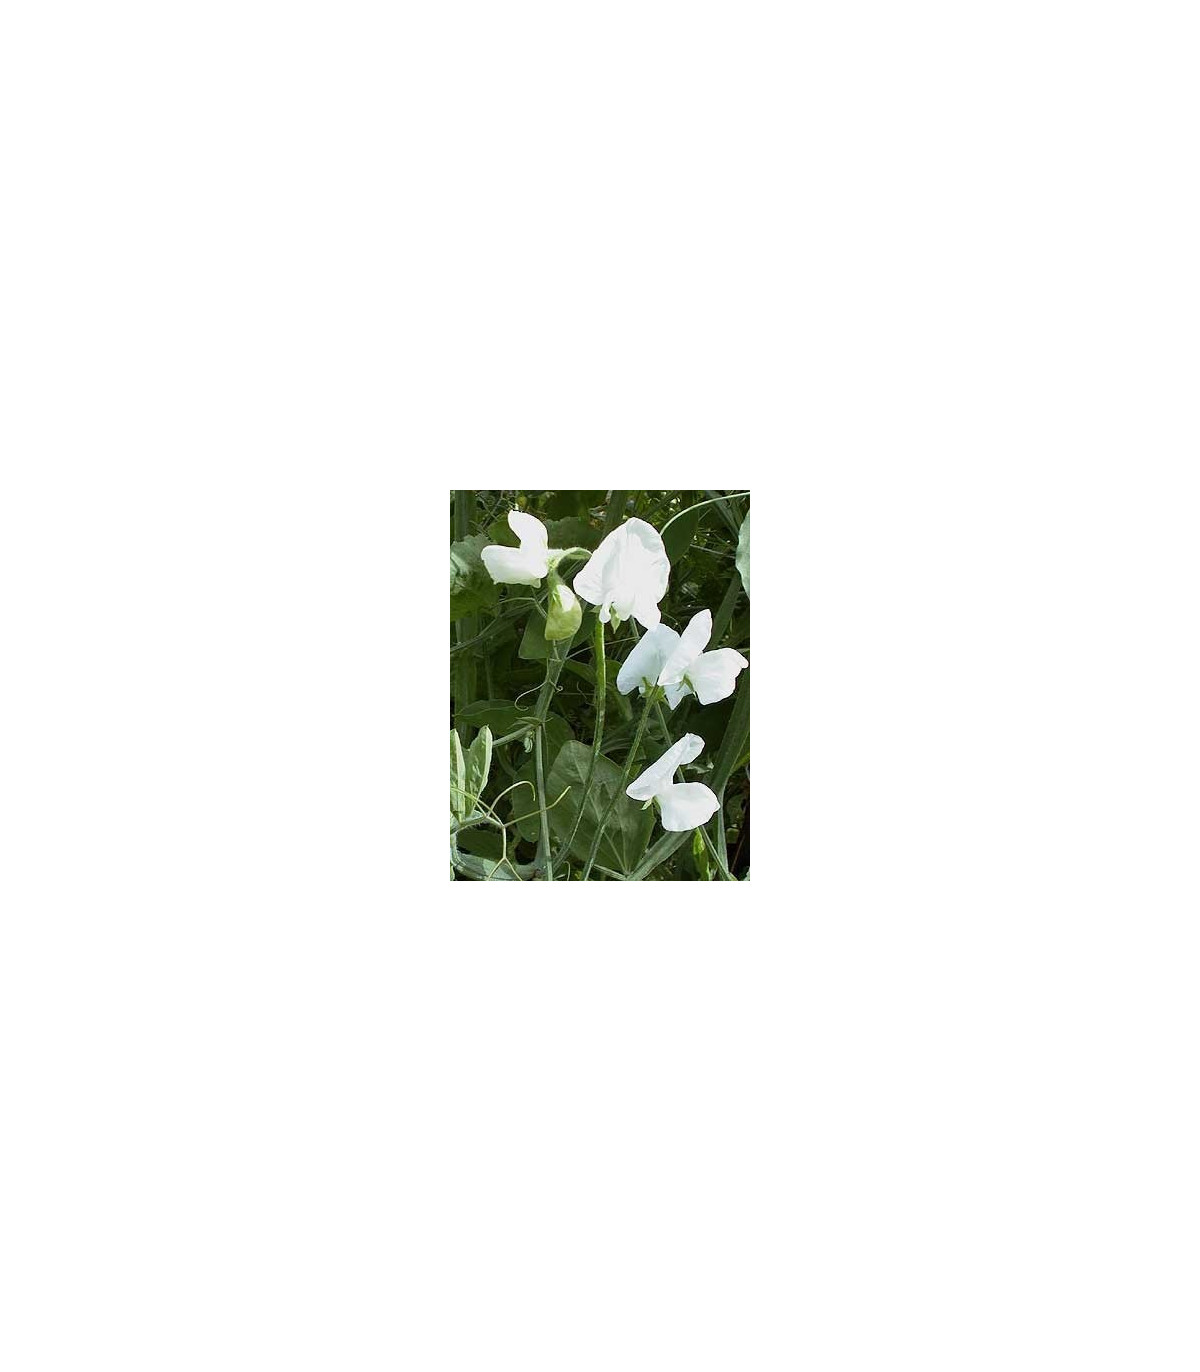 Hrachor popínavý kráľovský - Lathyrus odoratus - semená hrachora - 20 ks